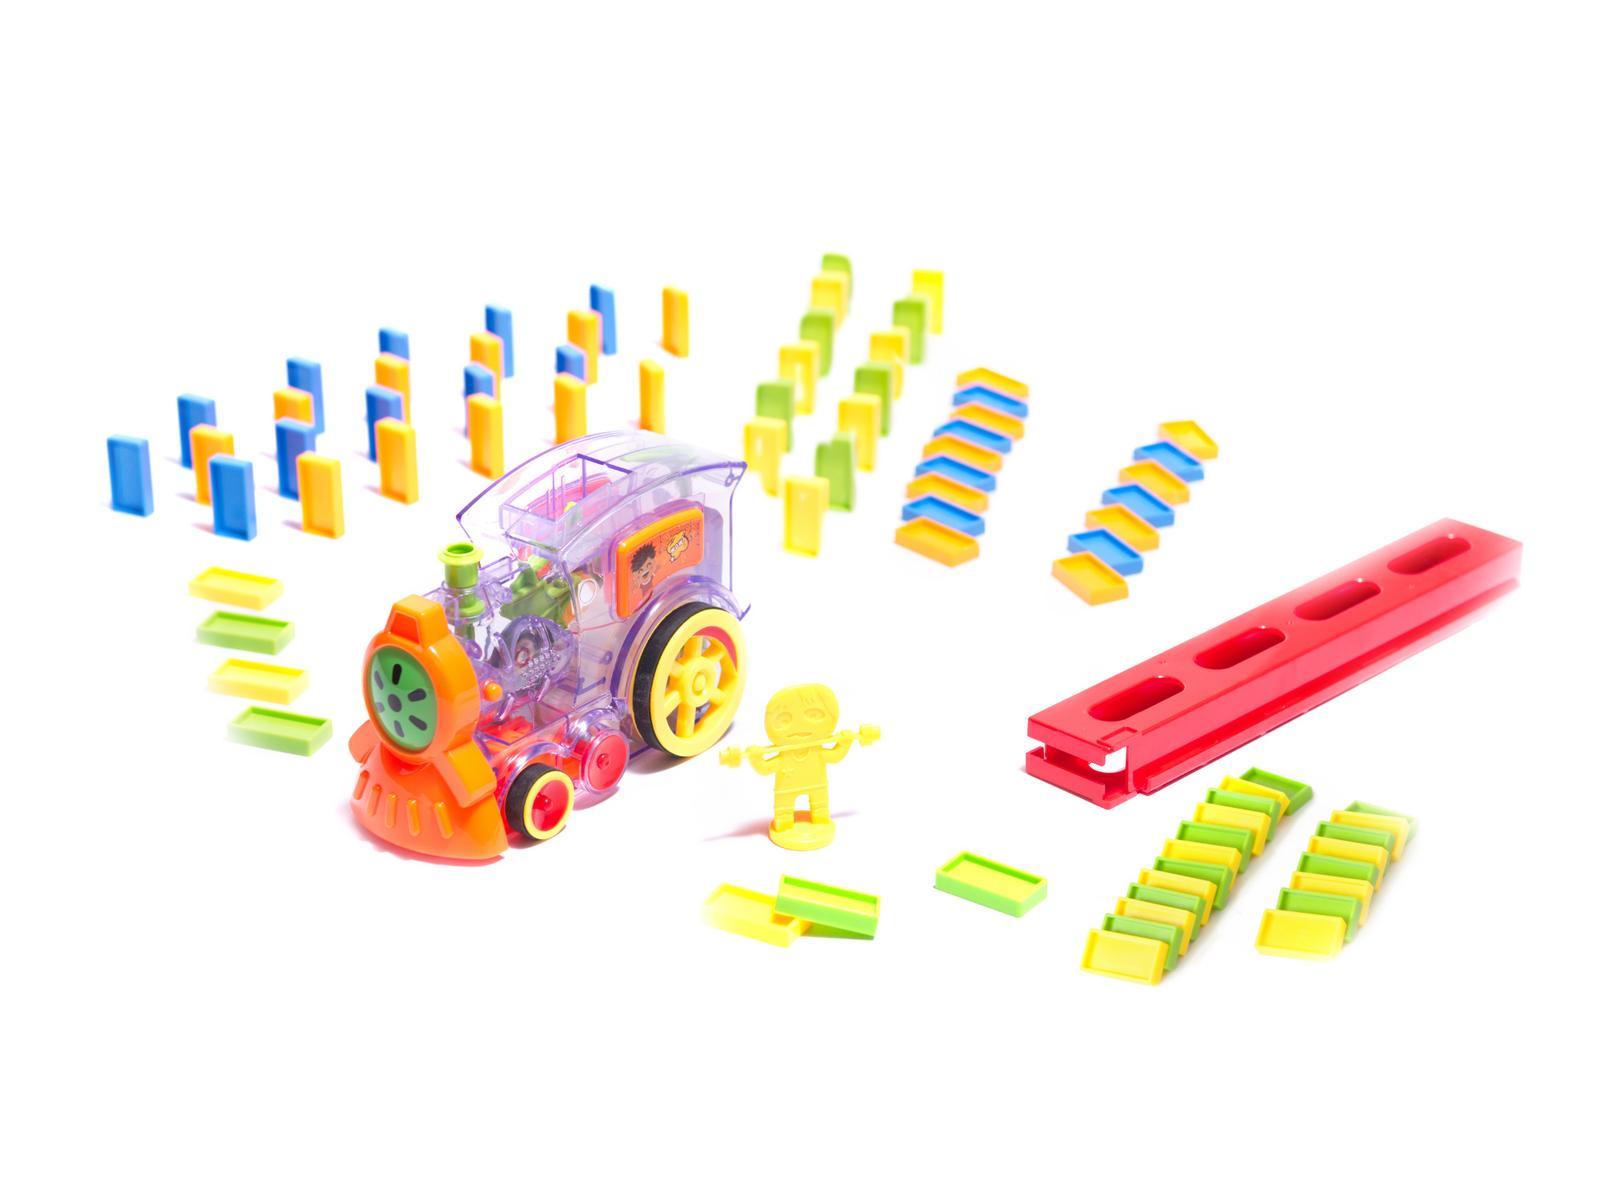 Pociąg Lokomotywa interaktywna układanka domino z kolejką zabawka dla dzieci 16x7x10 cm nr. 8